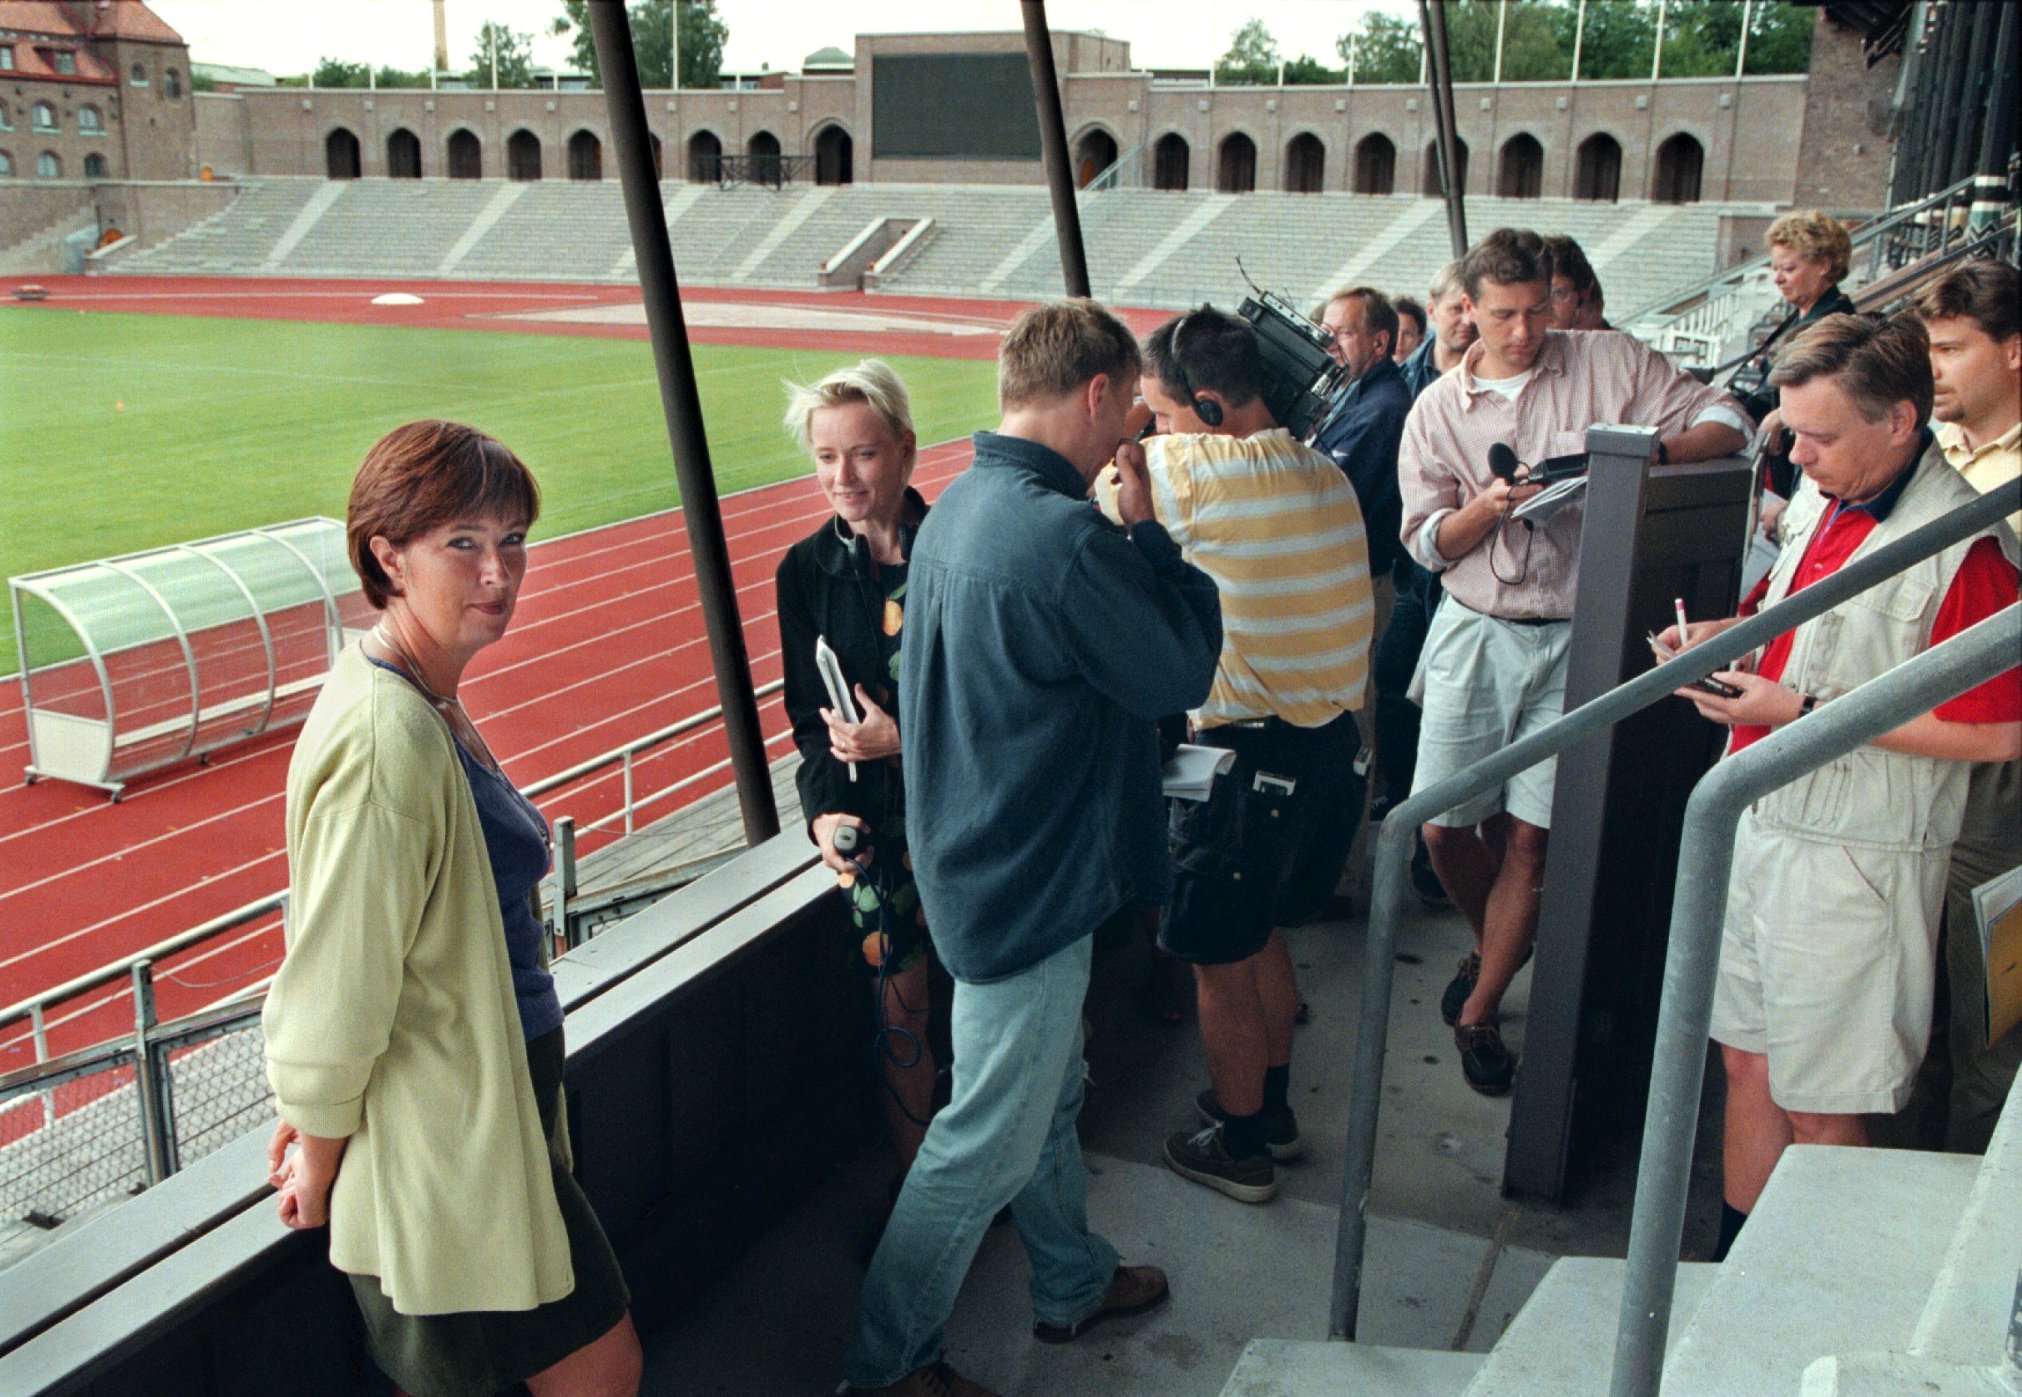 Inte bara bollsporter har utspelats på Stockholms Stadion. Här spelas ett spel som kallas "politik", när Mona Sahlin besvarar pressens frågor om Stockholms OS-ansökan år 1997.